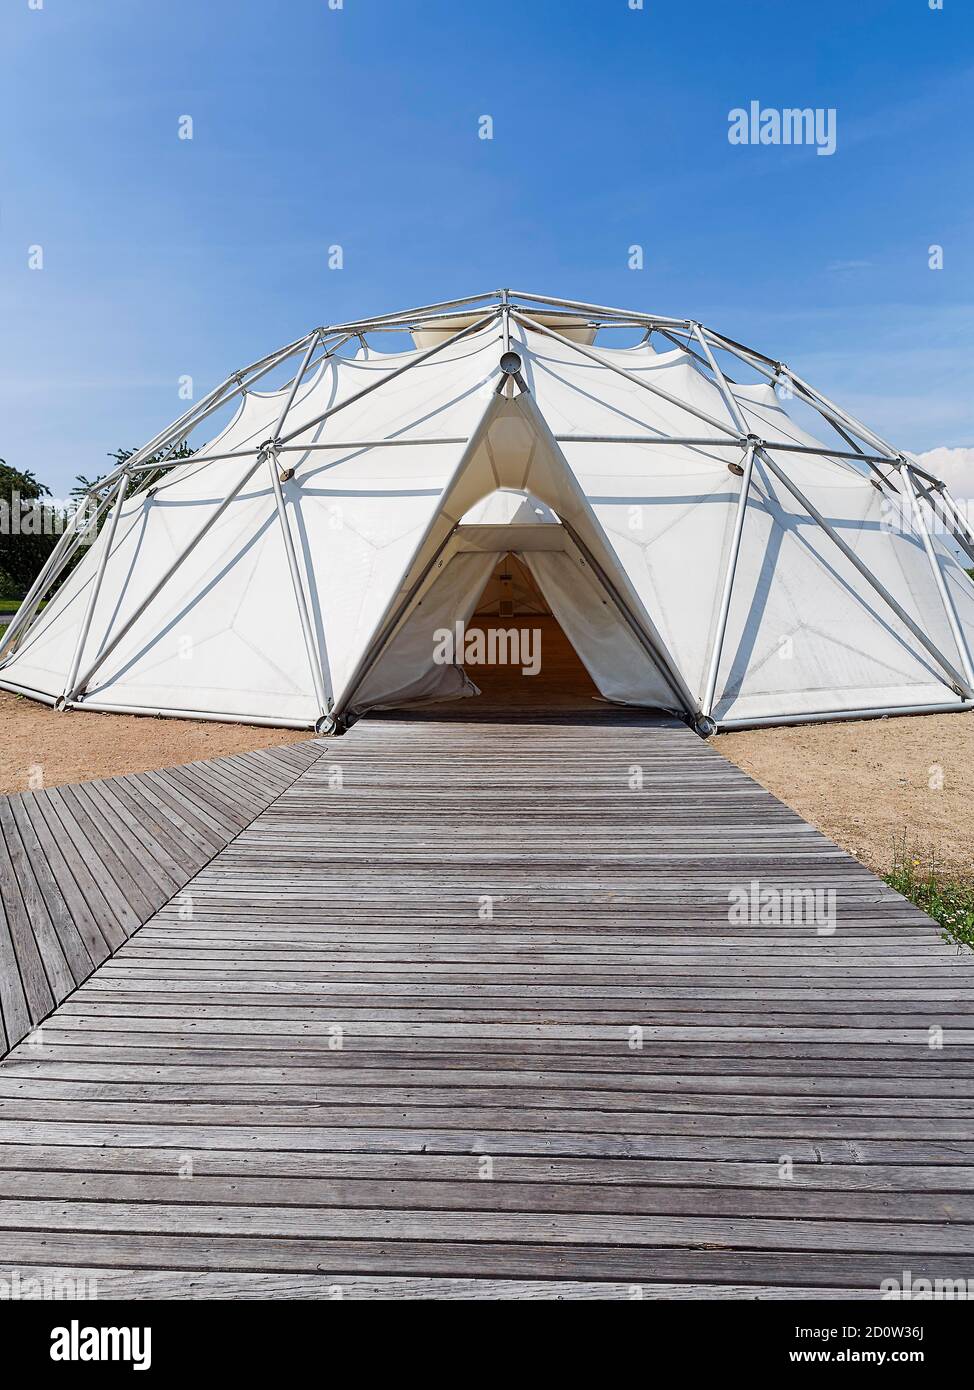 Cupola geodetica, tenda con passerella in legno, sala eventi, sala